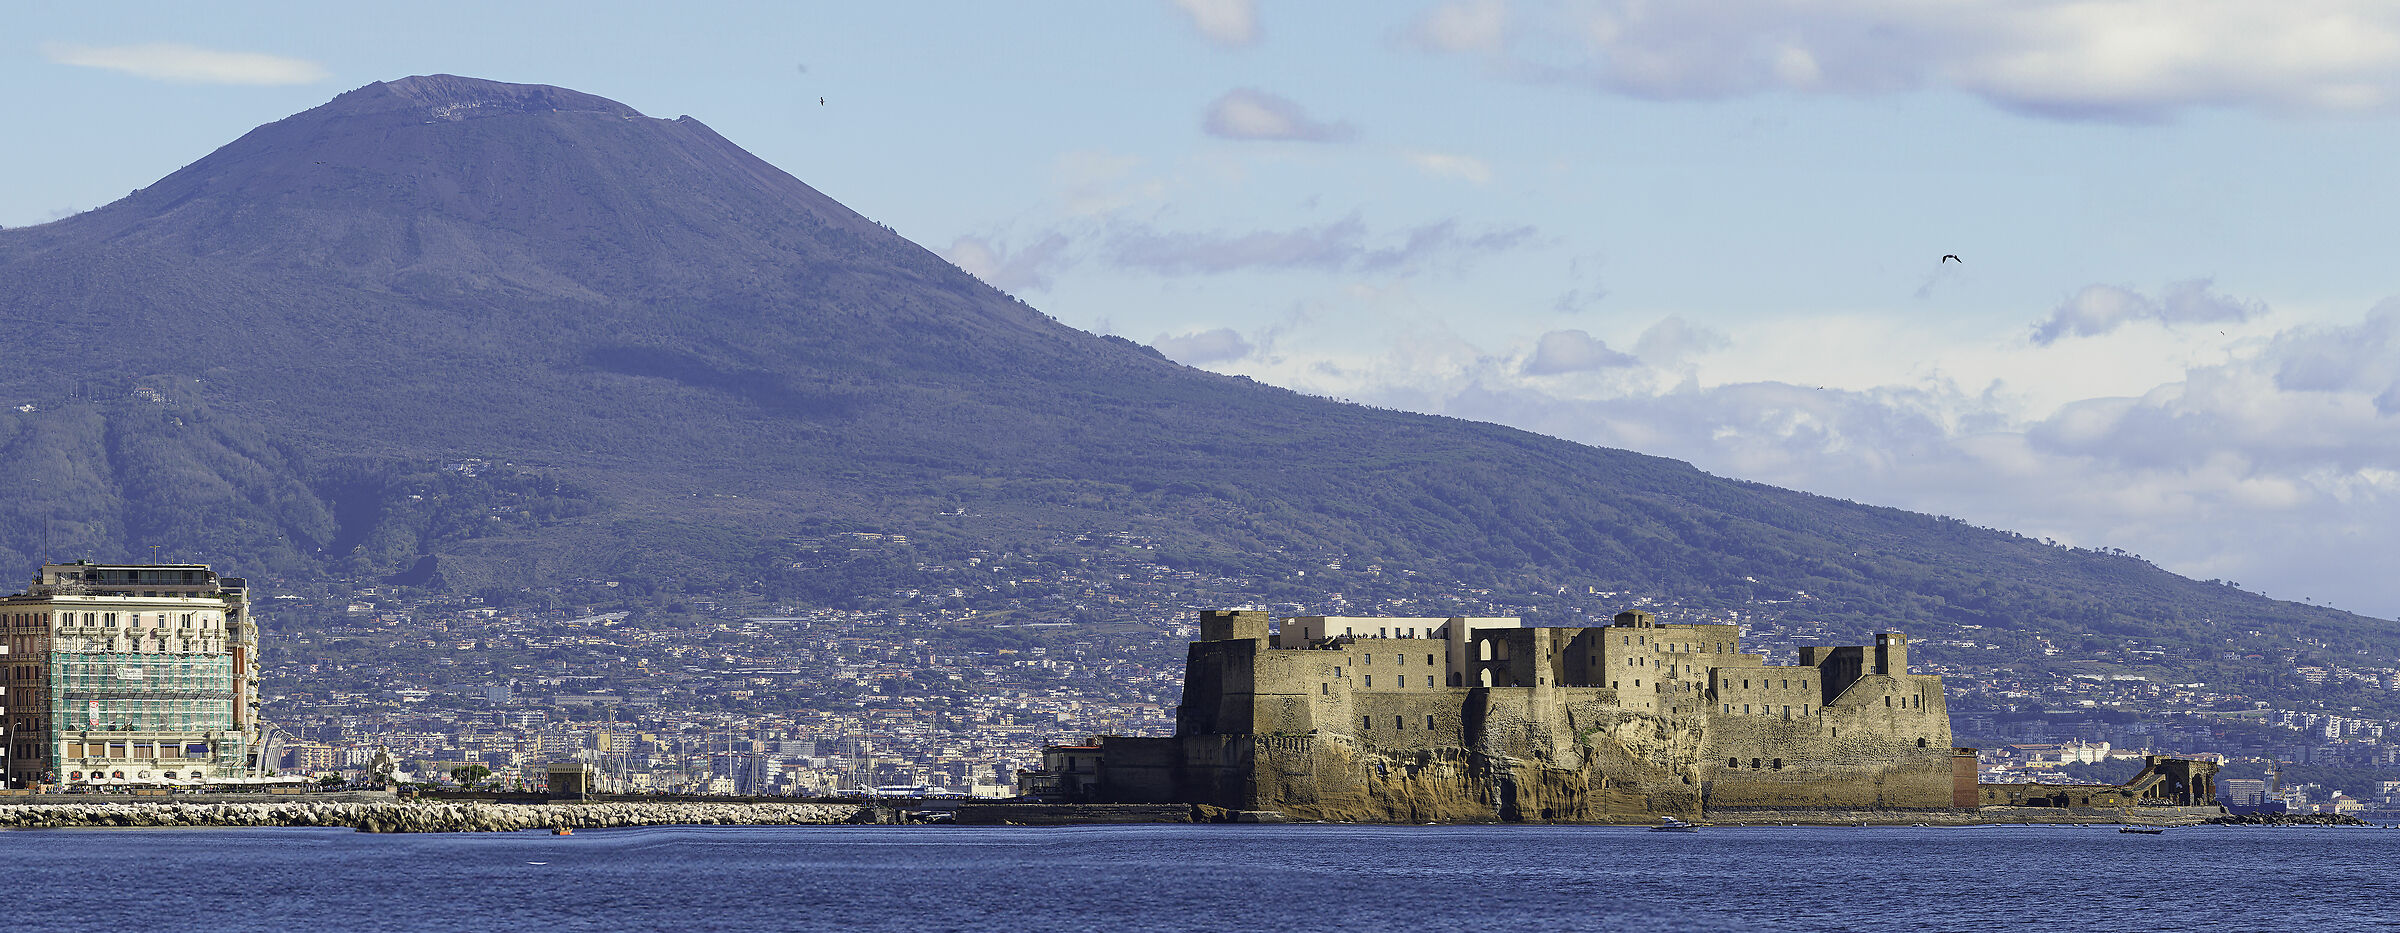 Panoramica Vesuvio-castel dell'Ovo...